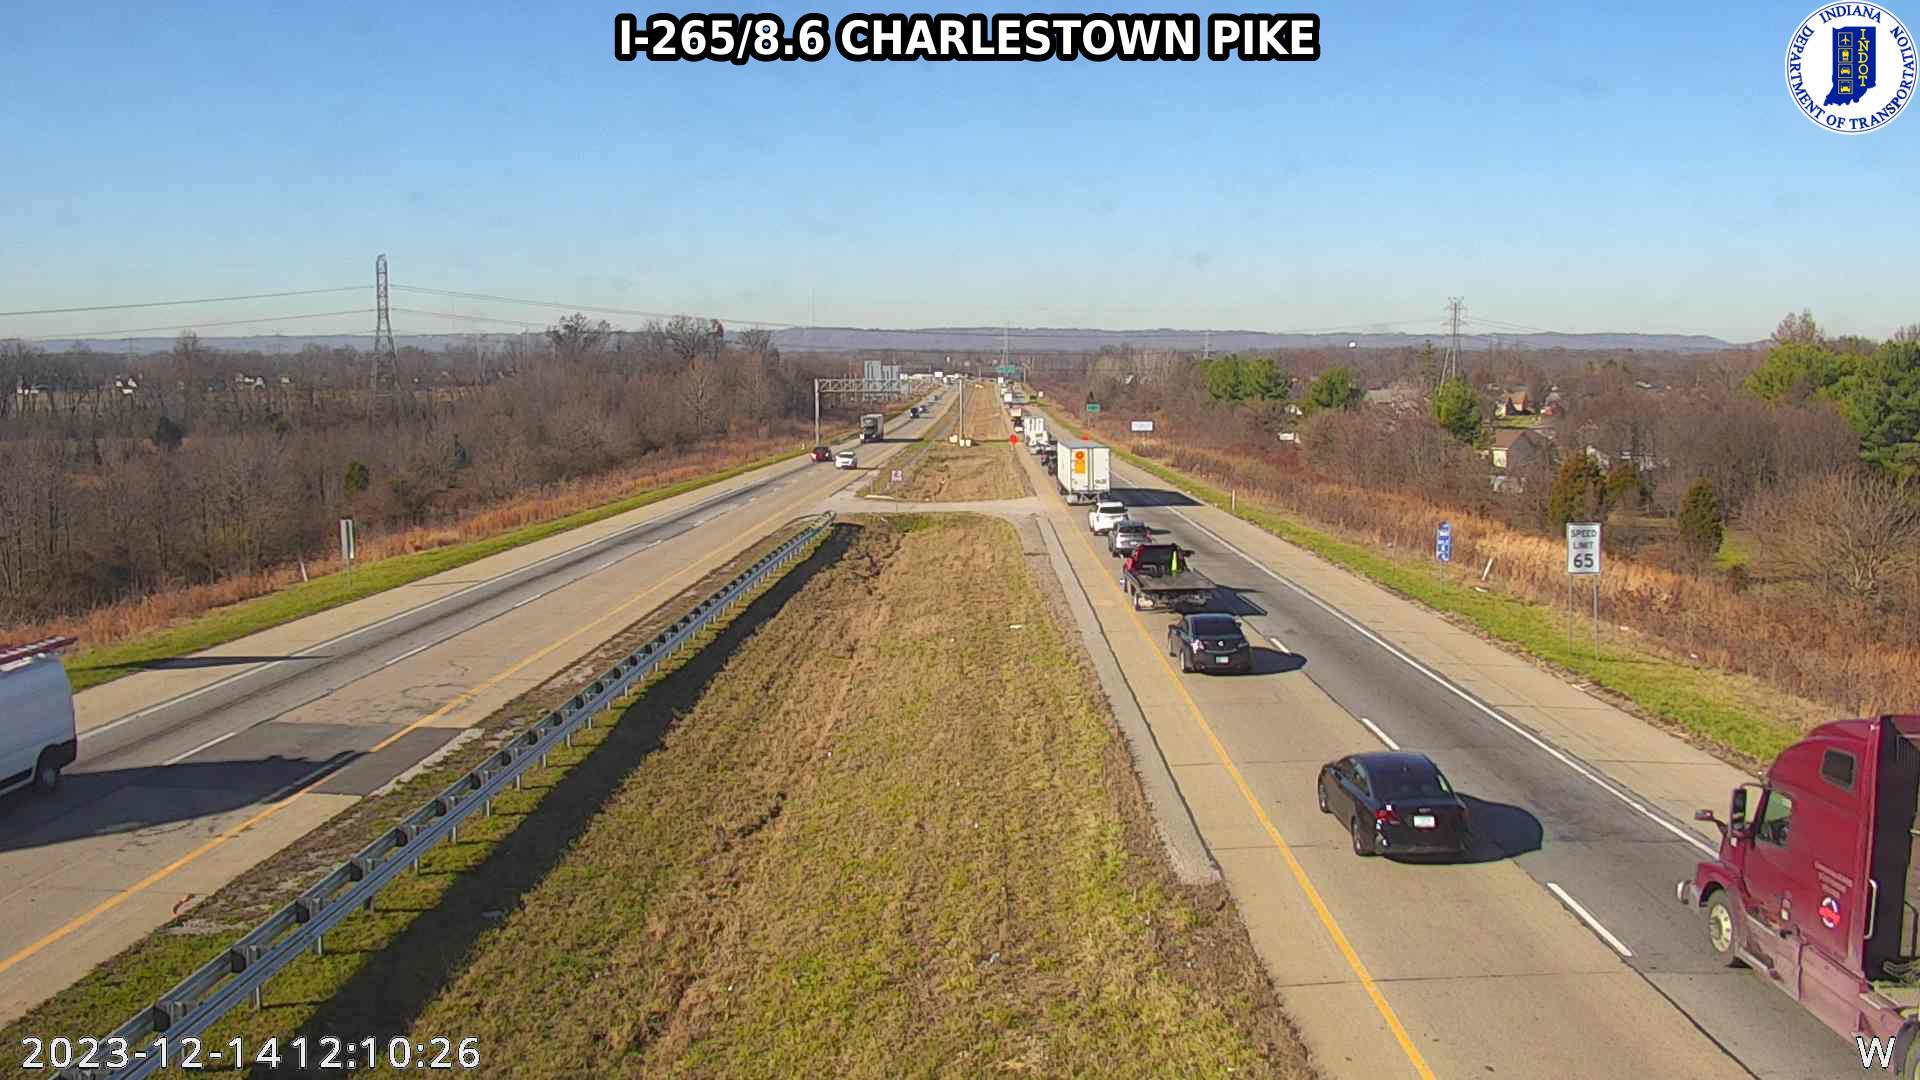 Watson: I-265: I-265/8.6 CHARLESTOWN PIKE: I-265/8.6 CHARLESTOWN PIKE Traffic Camera